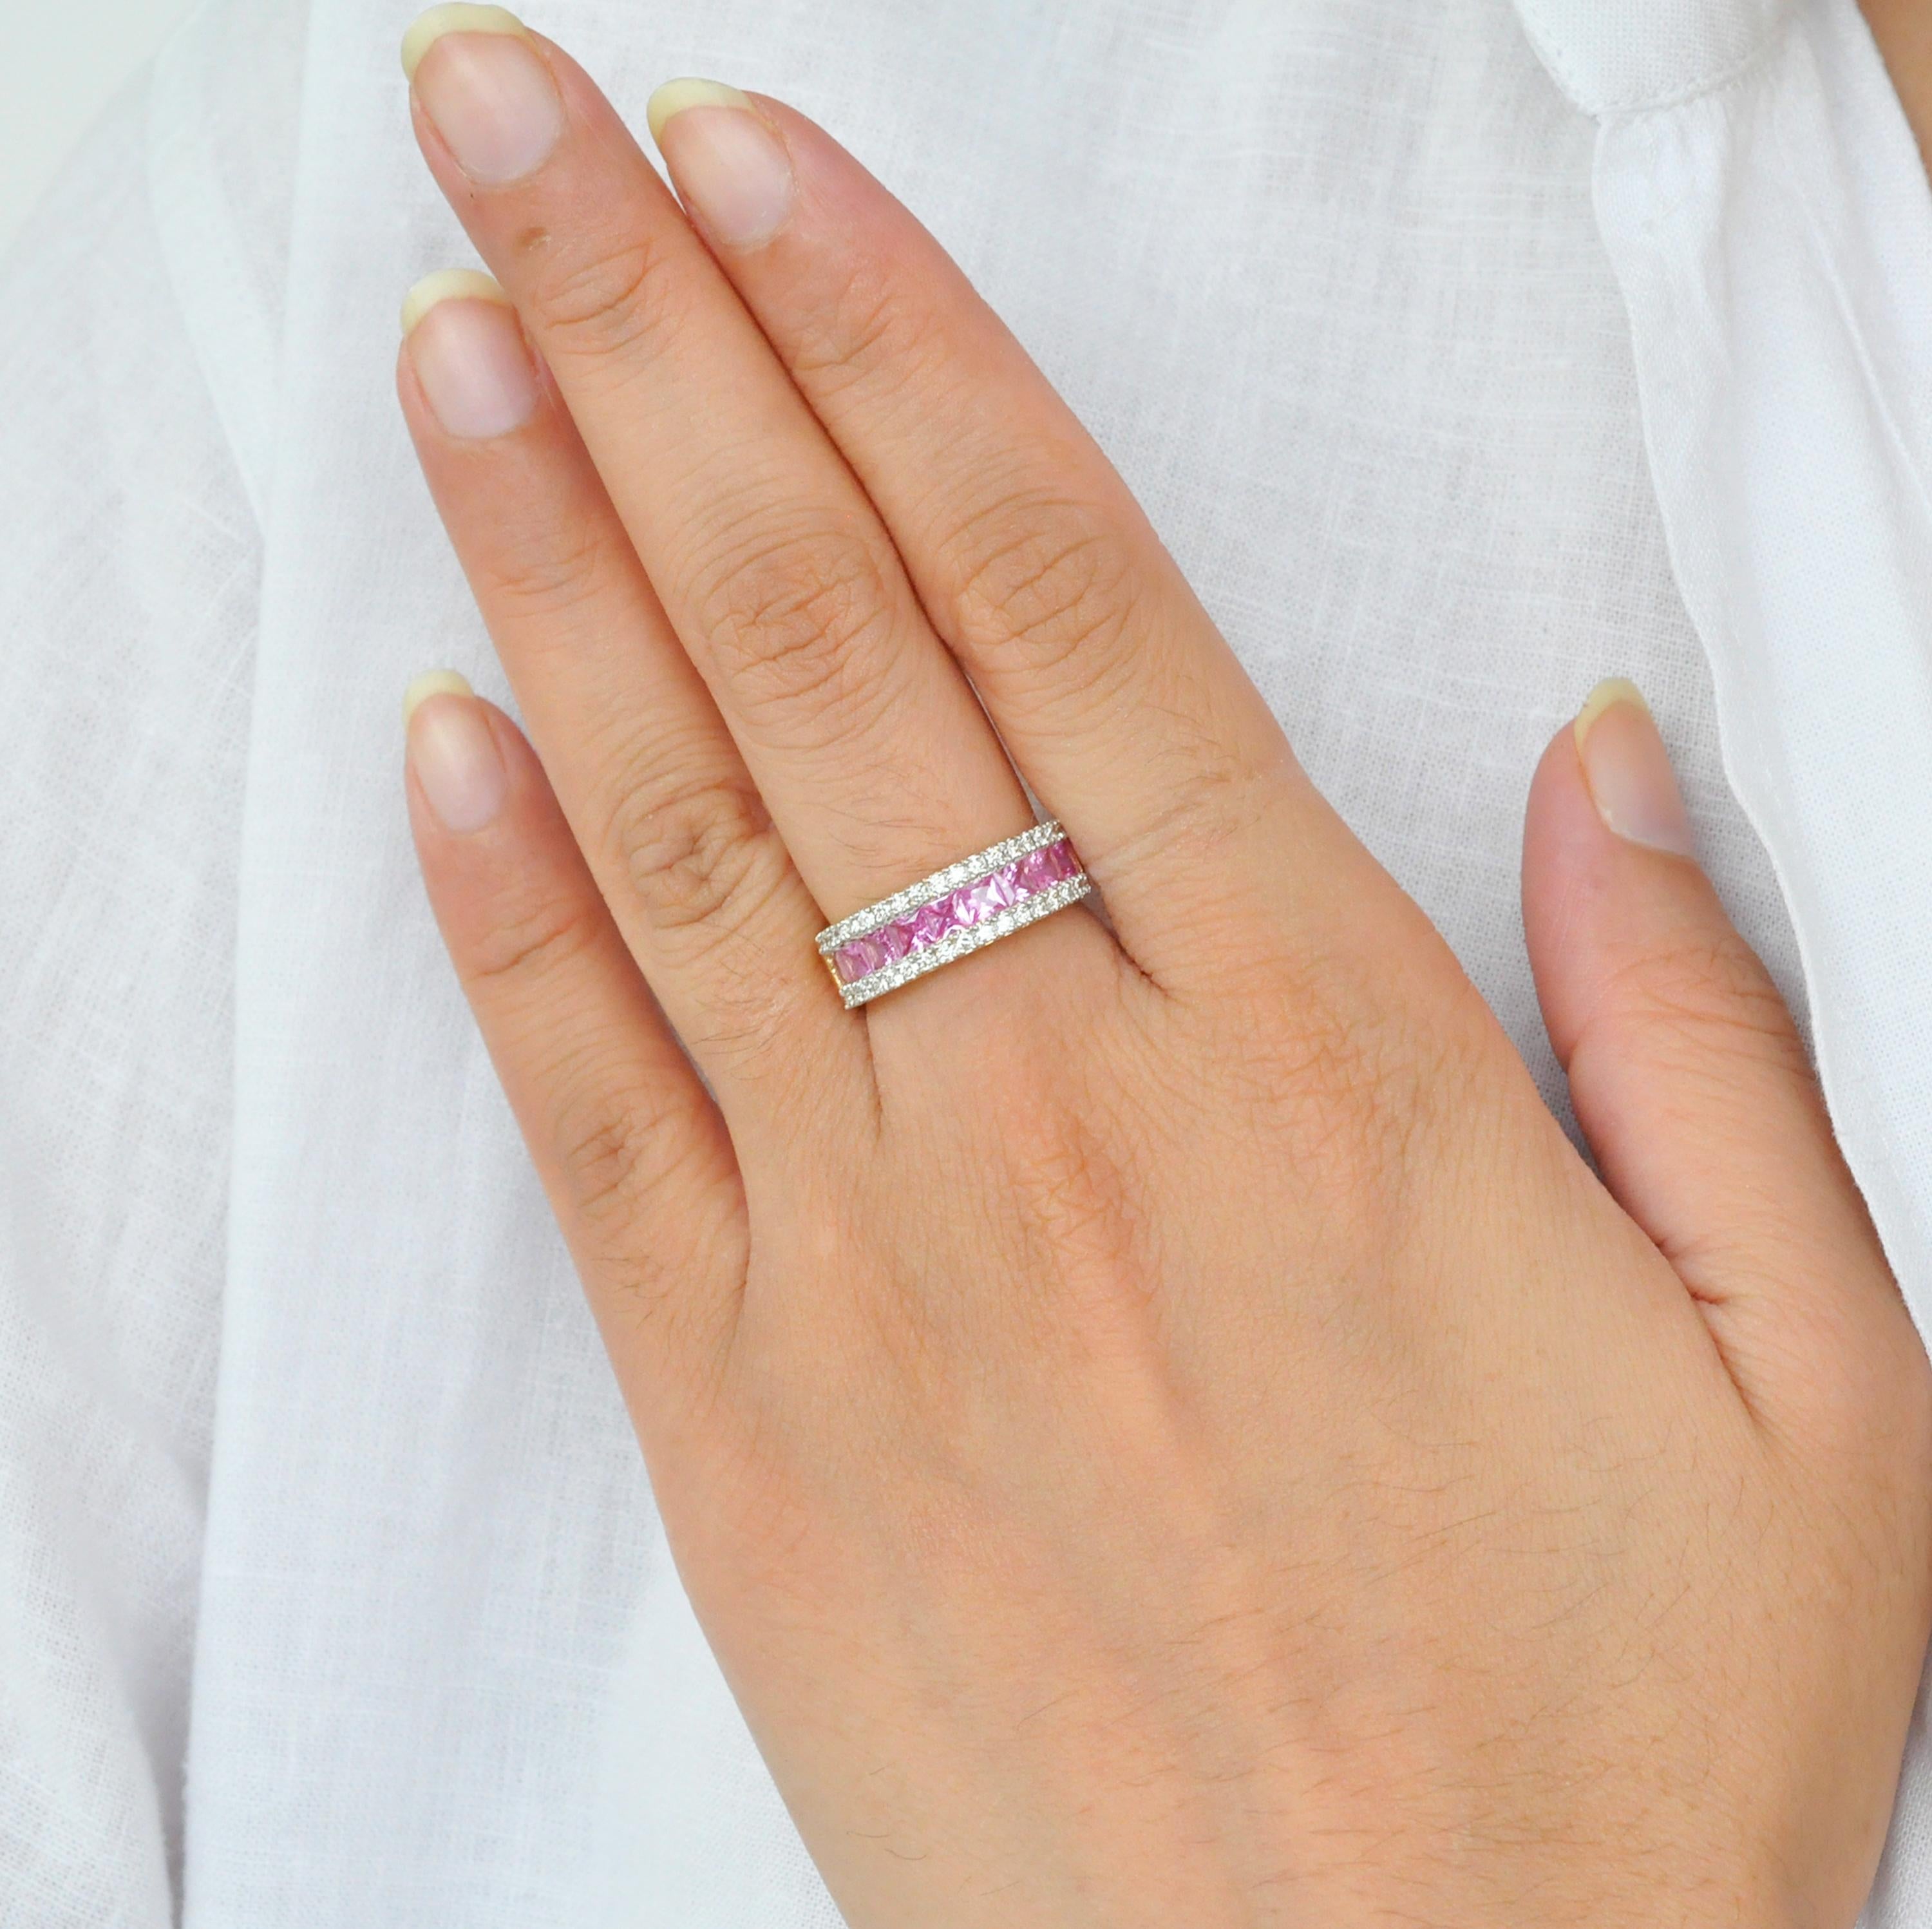 18 Karat Gold Kanal gesetzt Prinzessin geschnitten rosa Saphir Diamant lineare Band Ring.

Dieser schöne lineare Bandring mit glänzenden rosa Saphiren ist äußerst spektakulär. Eleganz und Schick in einem, dieser Ring zeichnet sich durch hochwertige,